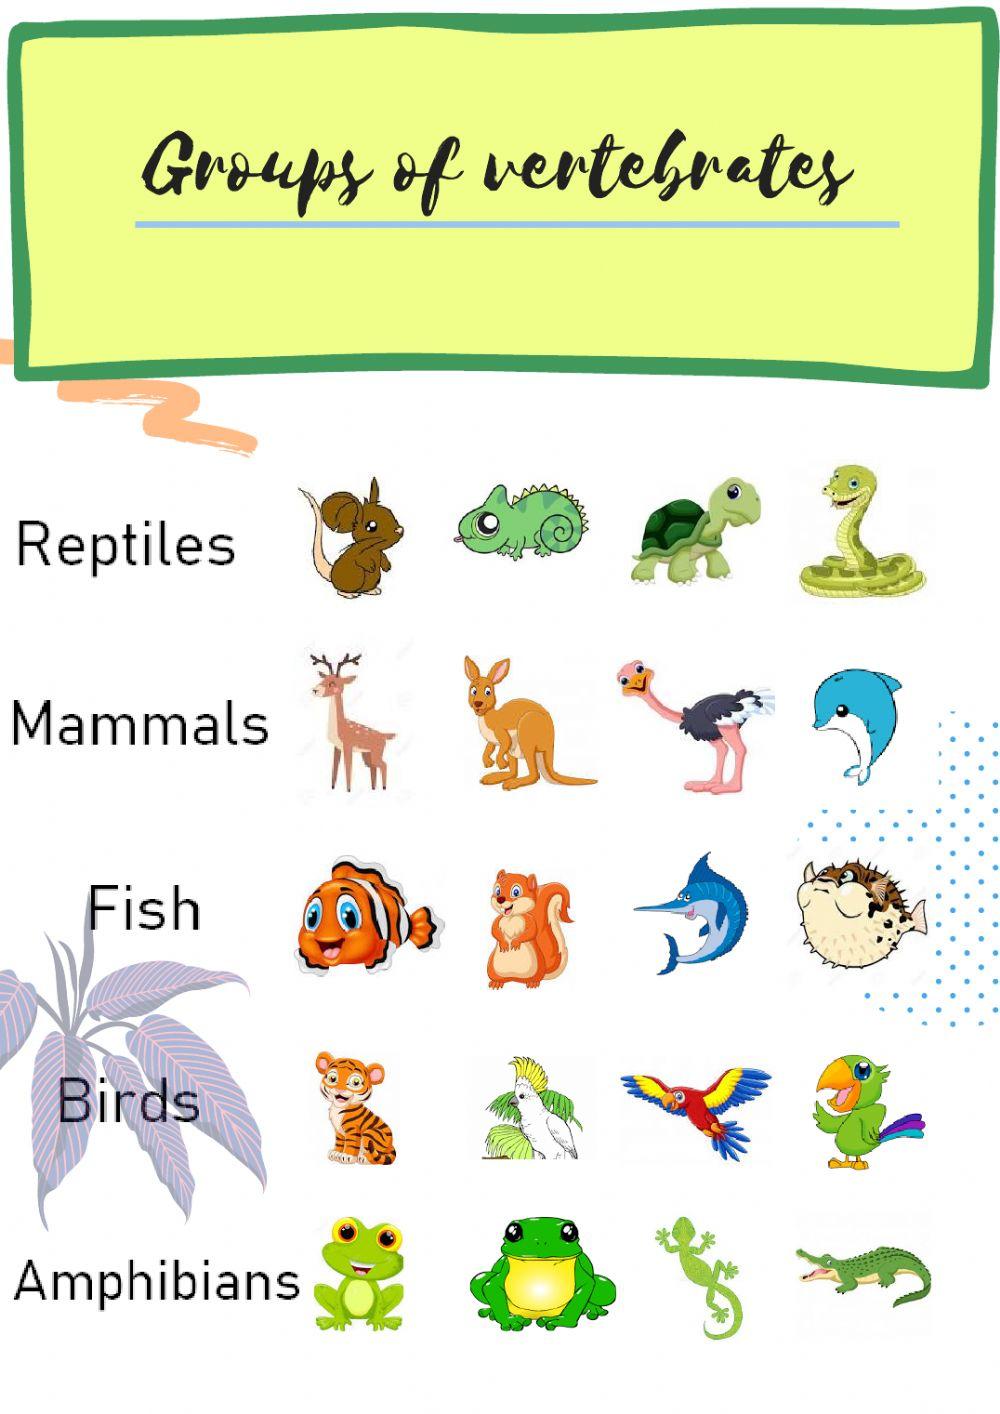 Groups of vertebrates